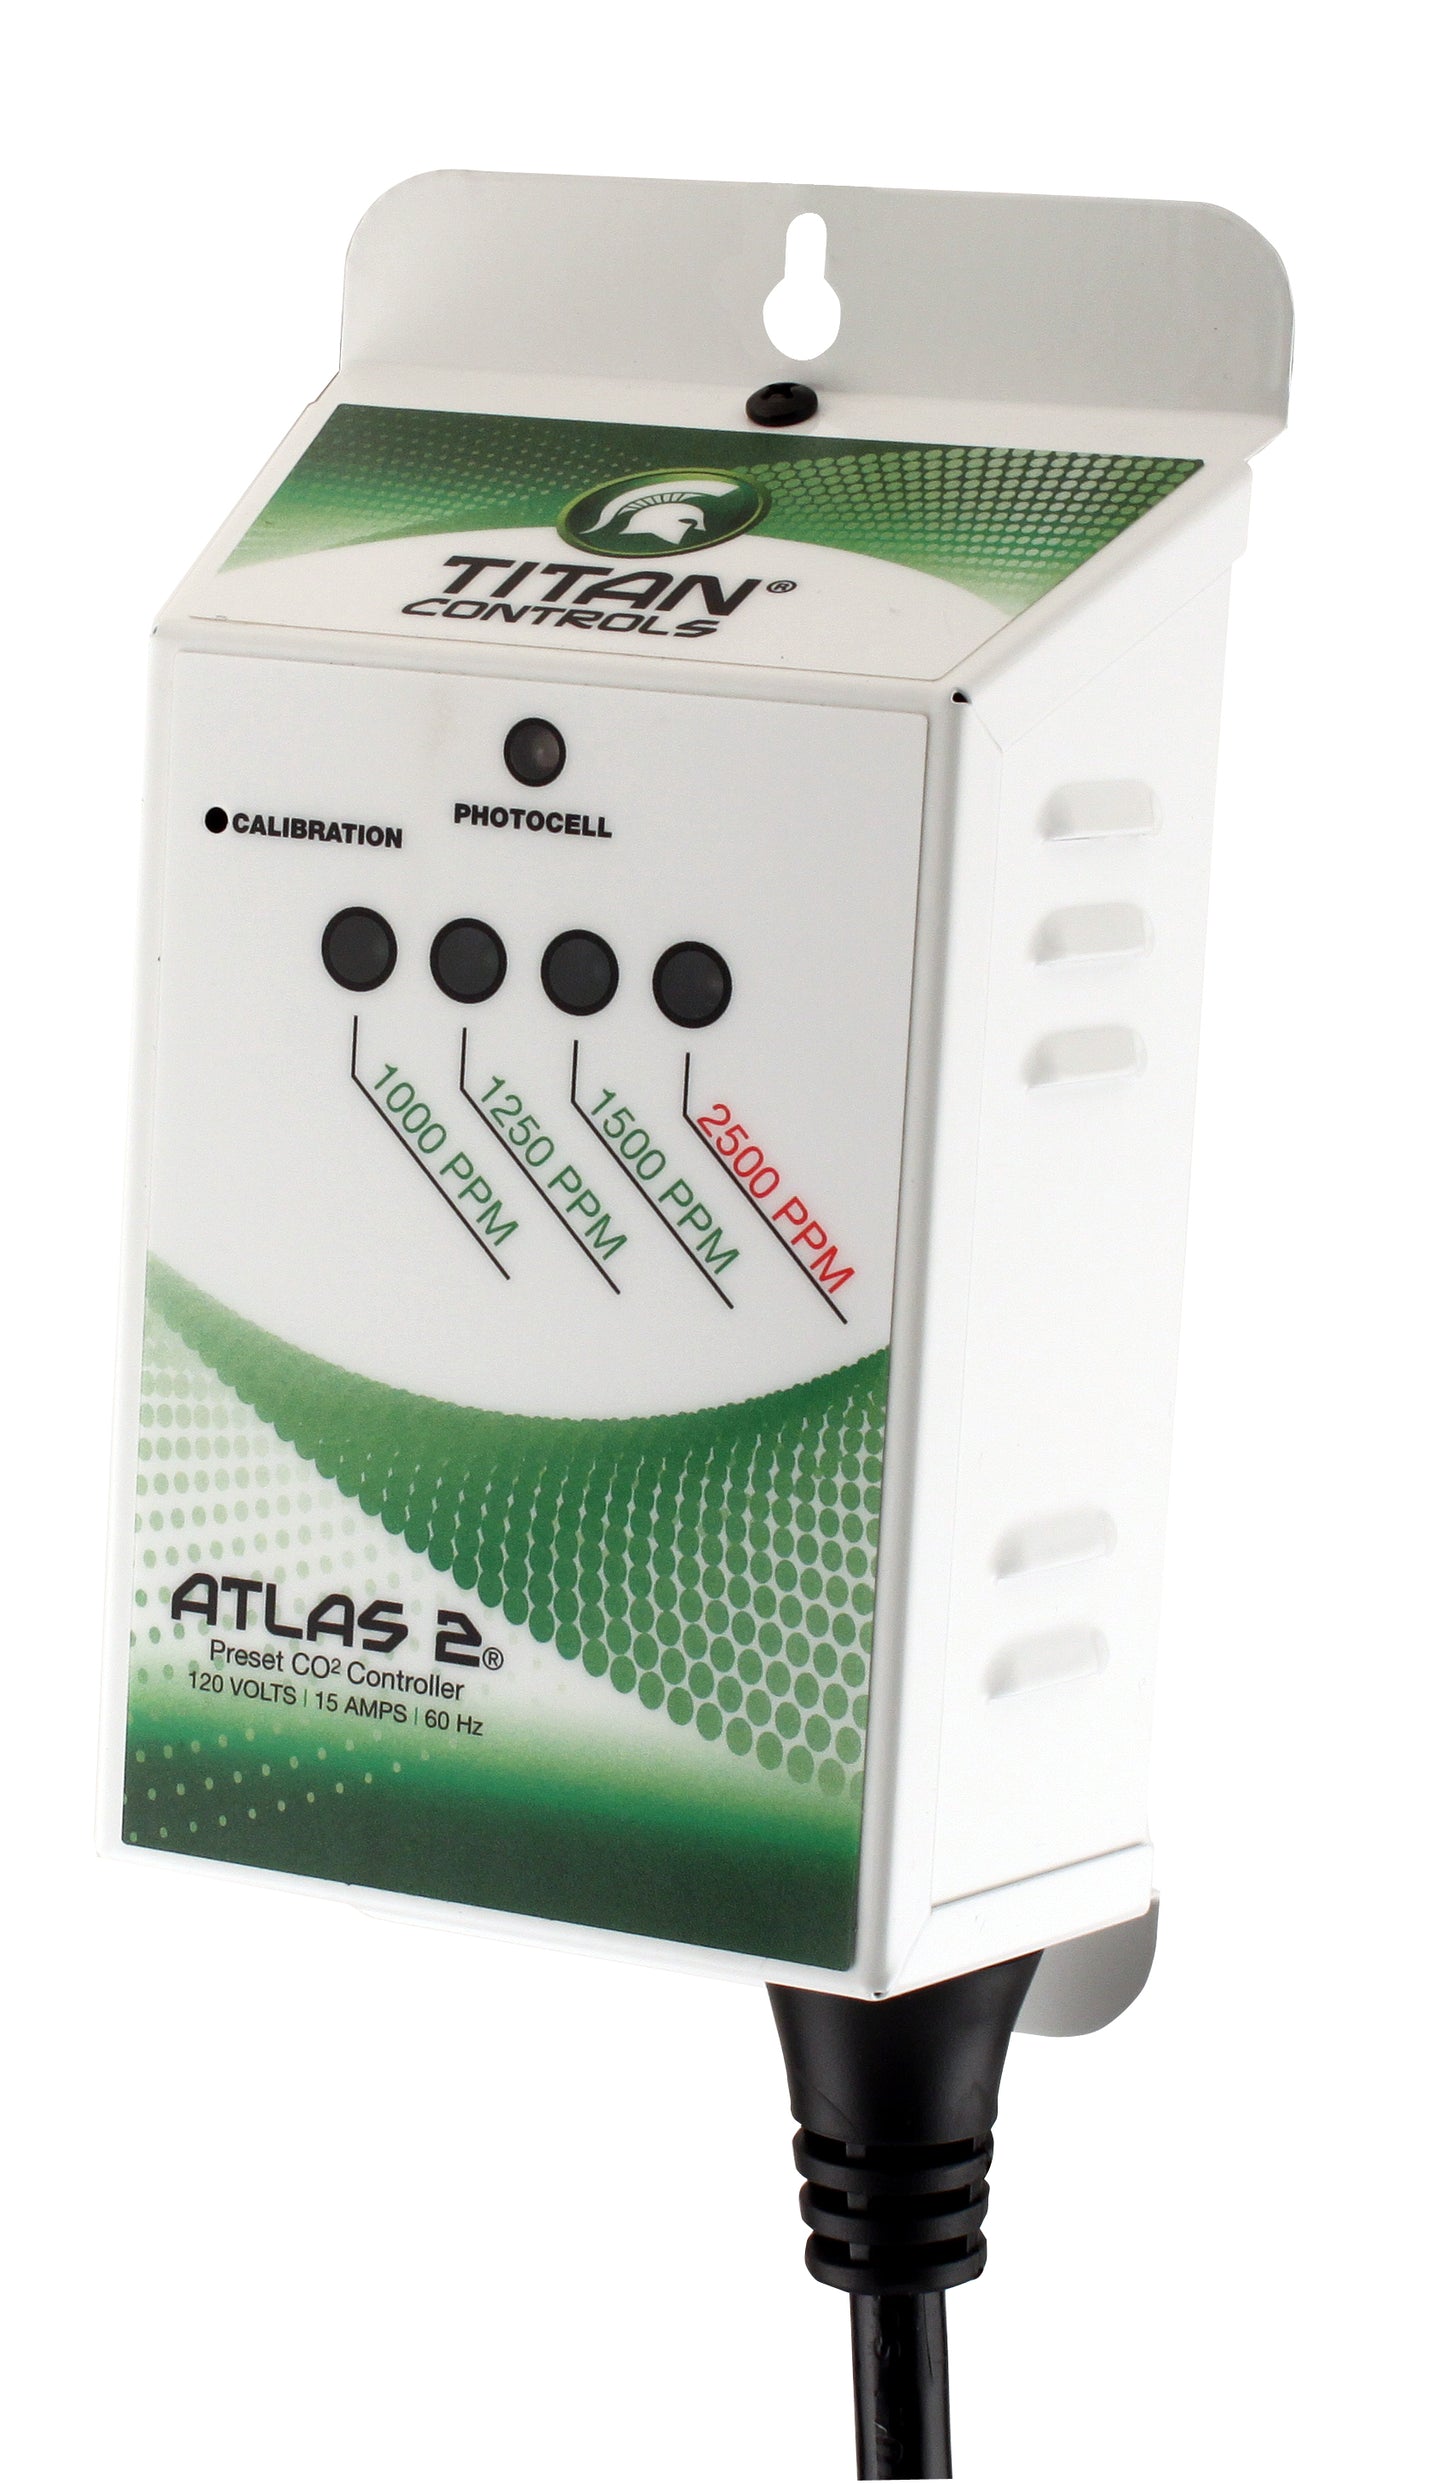 Titan Controls® Atlas® 2 - Preset CO2 Monitor/Controller